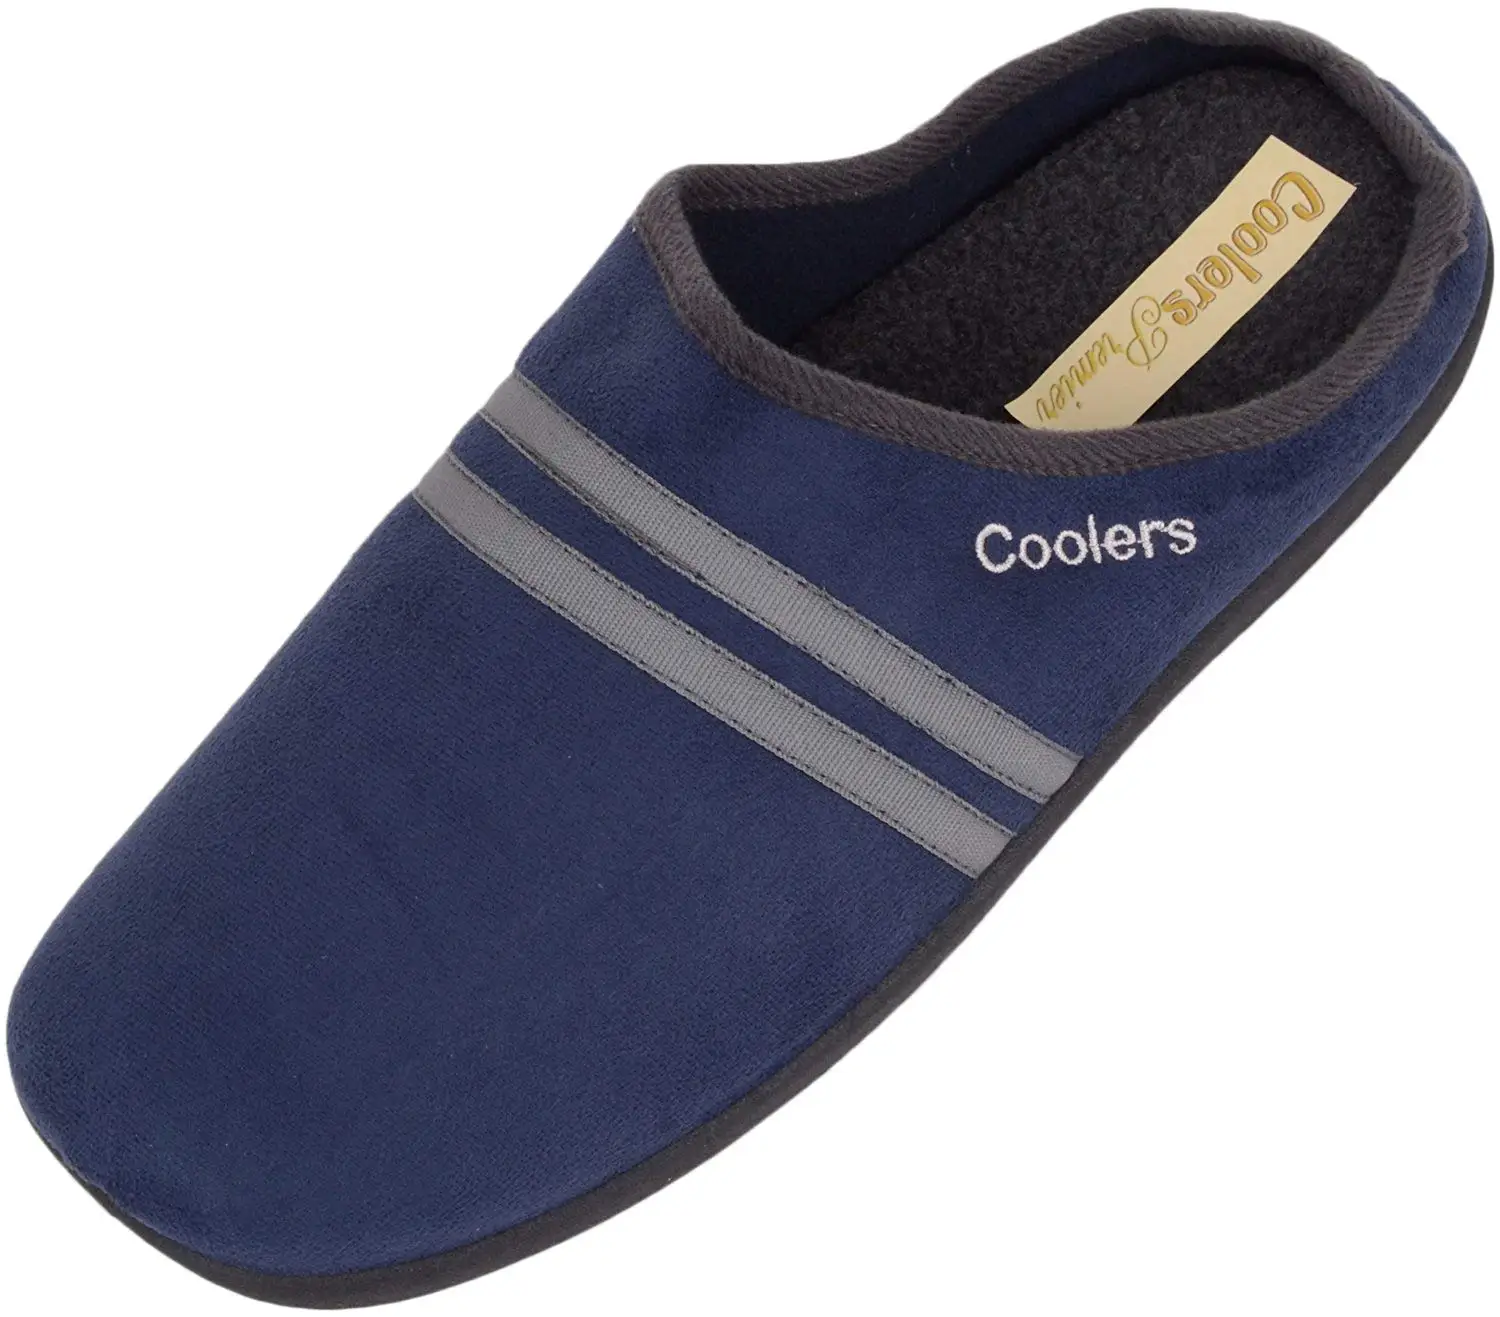 coolers premier ladies slippers